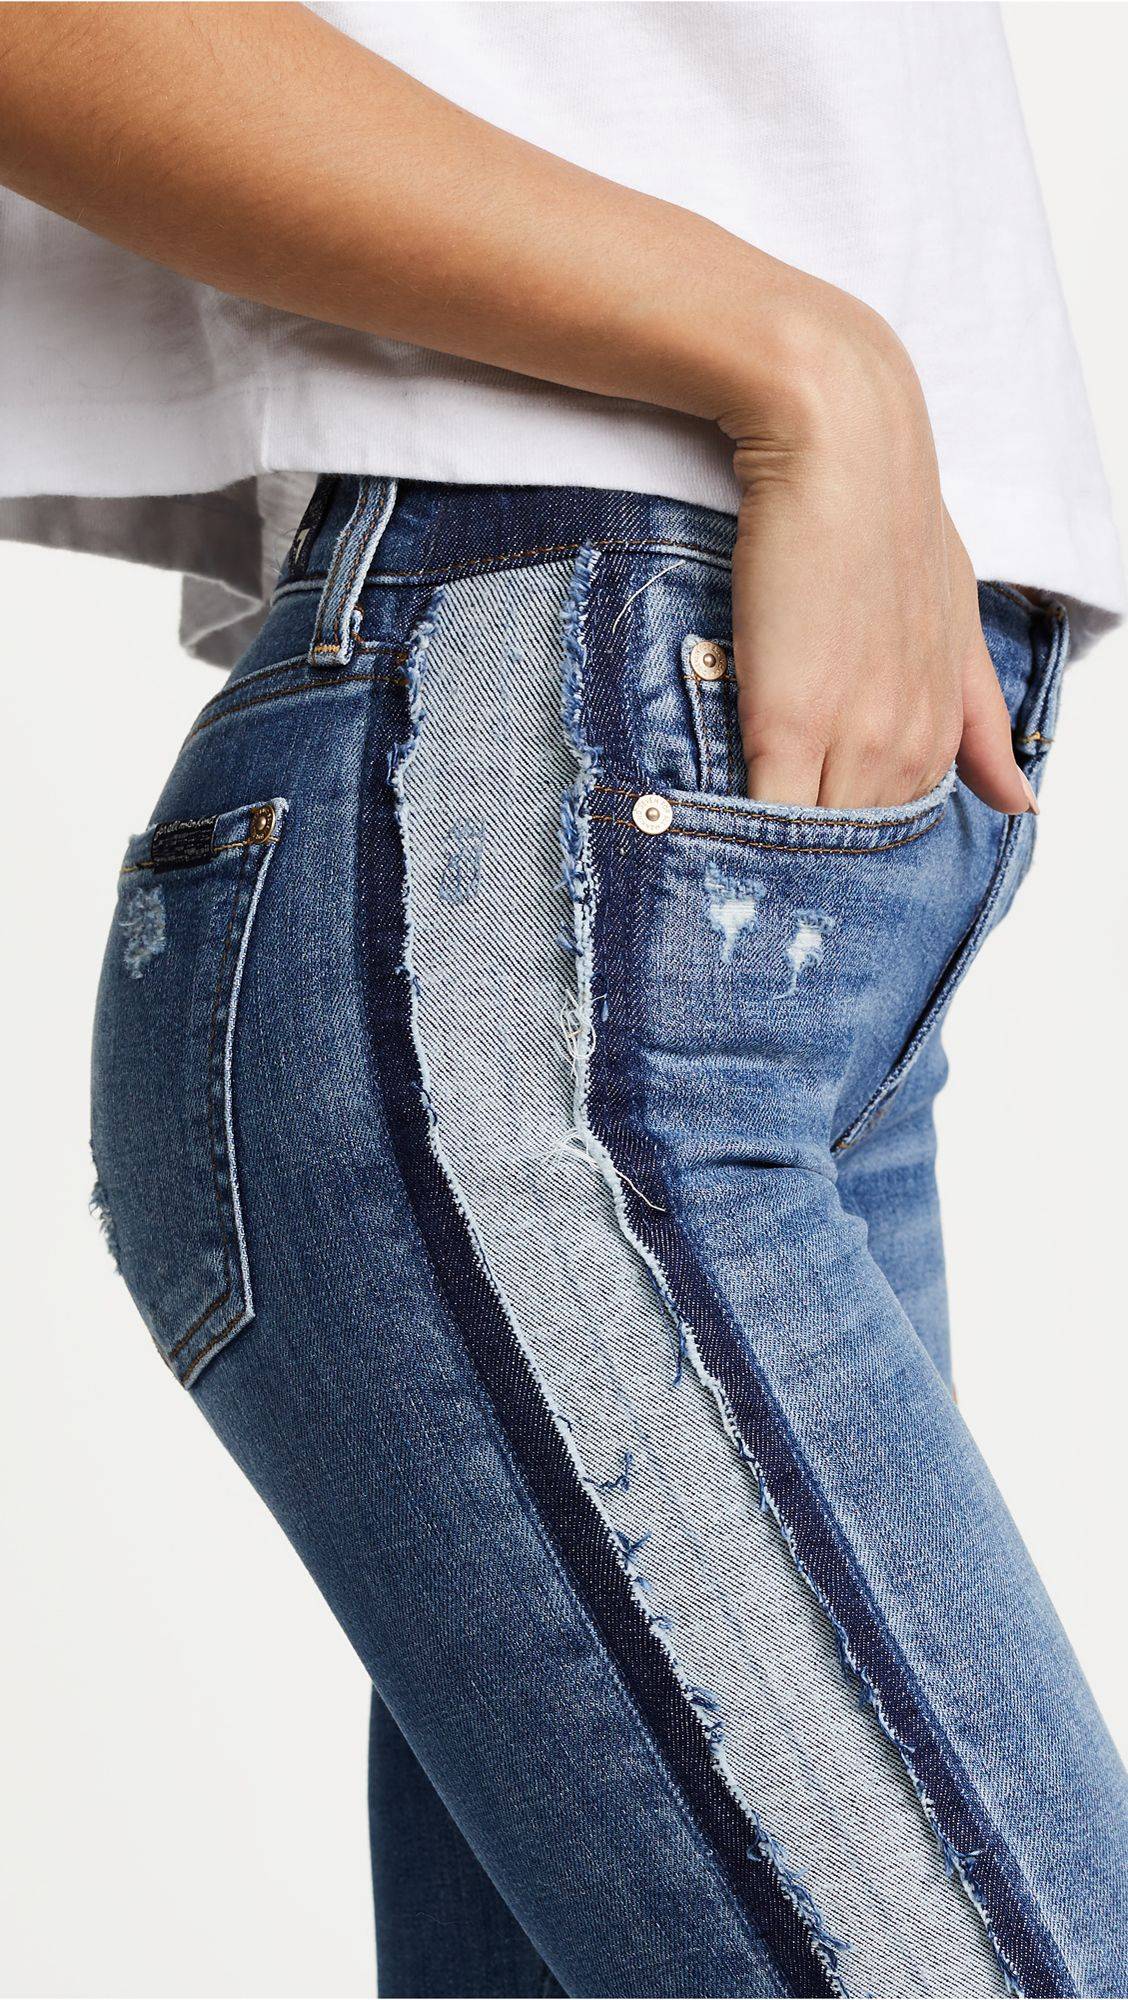 Как расширить джинсы, действенные методы с подробным описанием